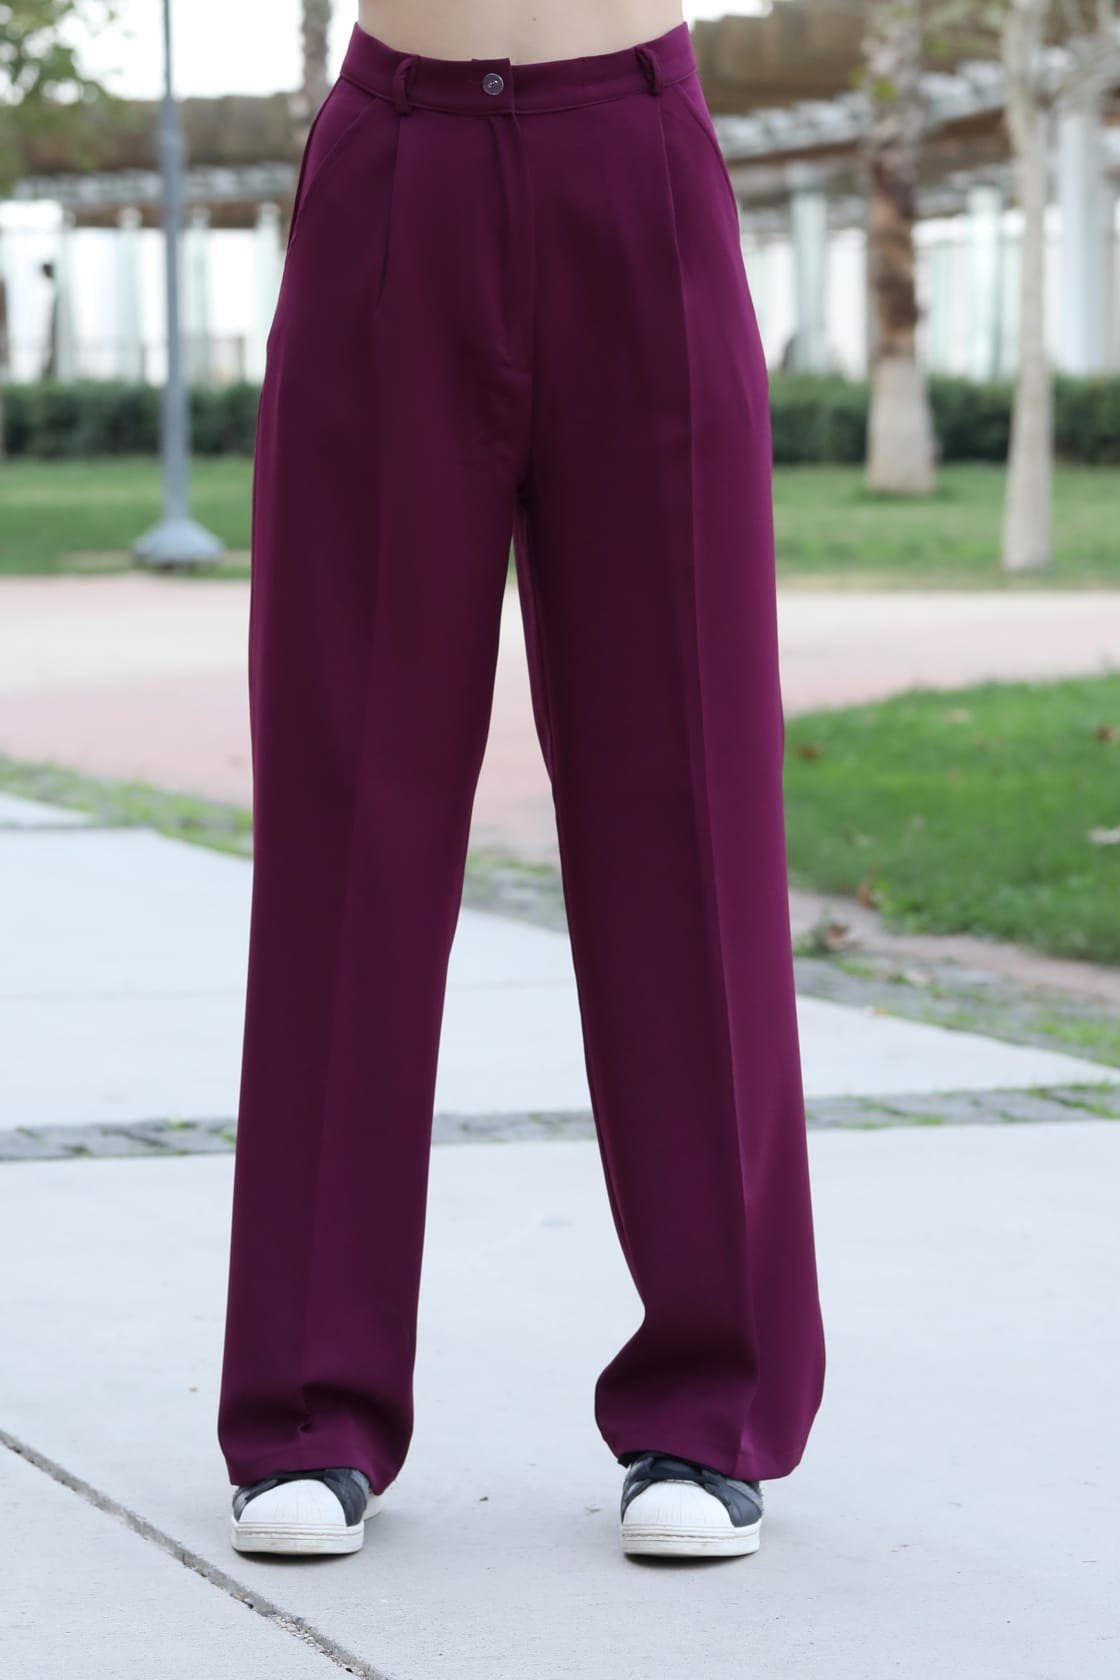 Modavitrini Palazzohose Weite Damen Hose Lässig Locker lange Hose elegant sportlich Hohe Taille, 10 Farben Violett